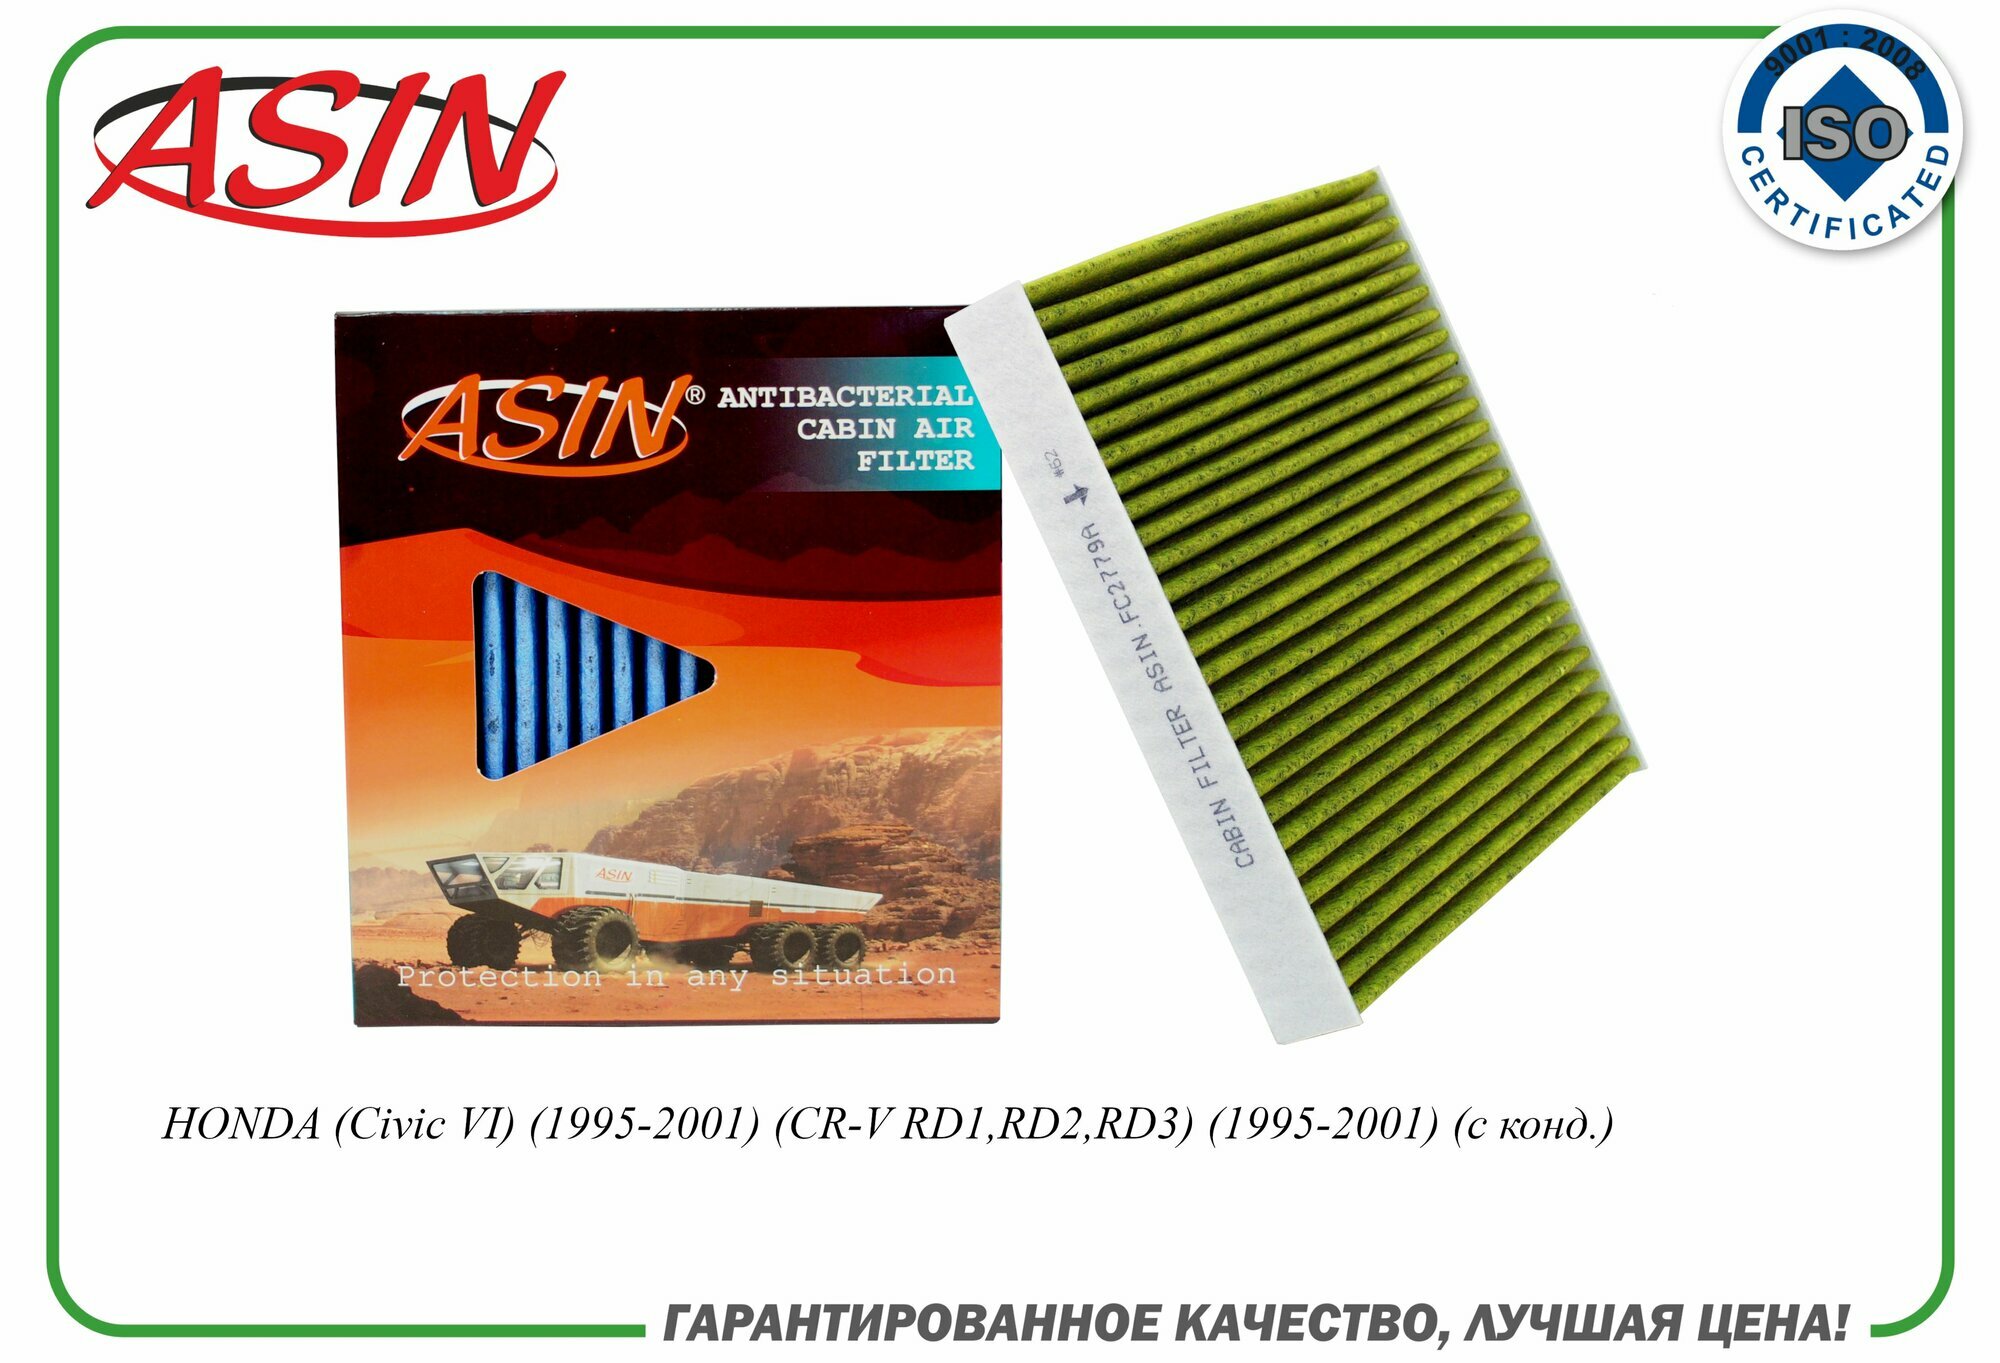 Фильтр салонный 80291-ST3-515 ASIN. FC2779A (антибактериальный угольный) для HONDA (Civic VI) (1995-2001) (CR-V RD1 RD2 RD3) (1995-2001) (с конд.)